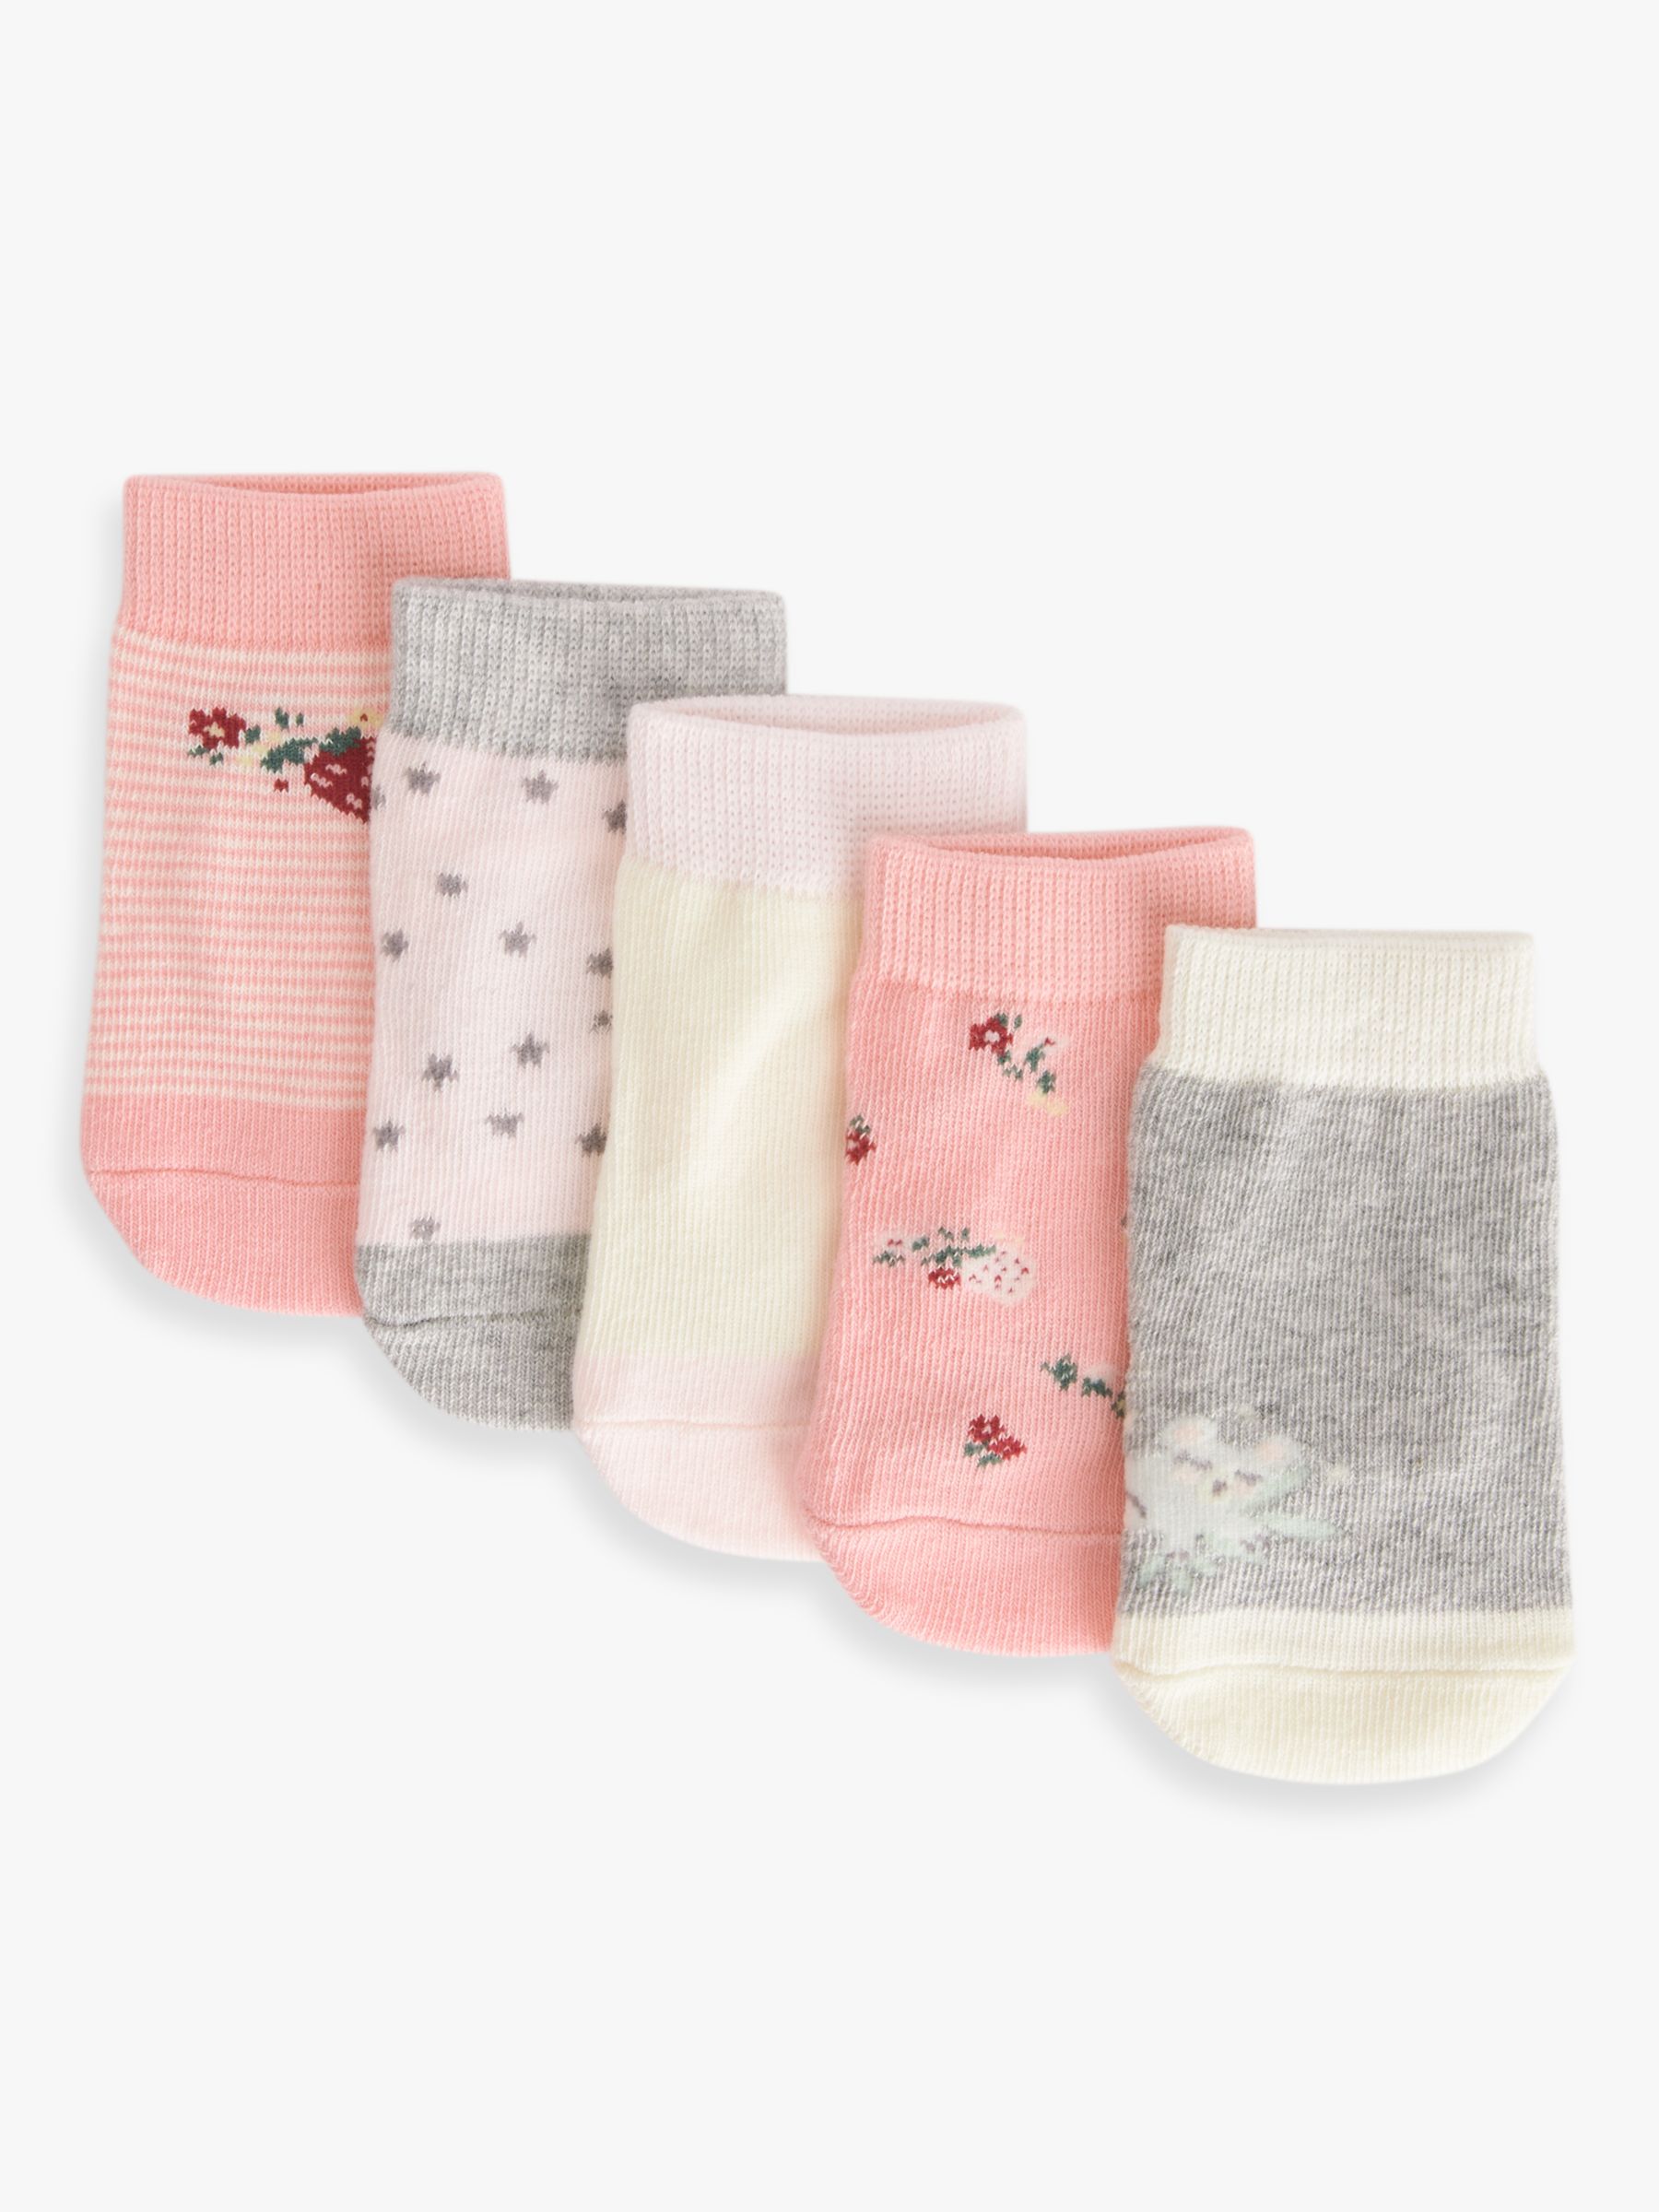 John Lewis Baby Organic Cotton Rich Koala Star Socks, Pack of 5, Pink/Multi, 6-12 months